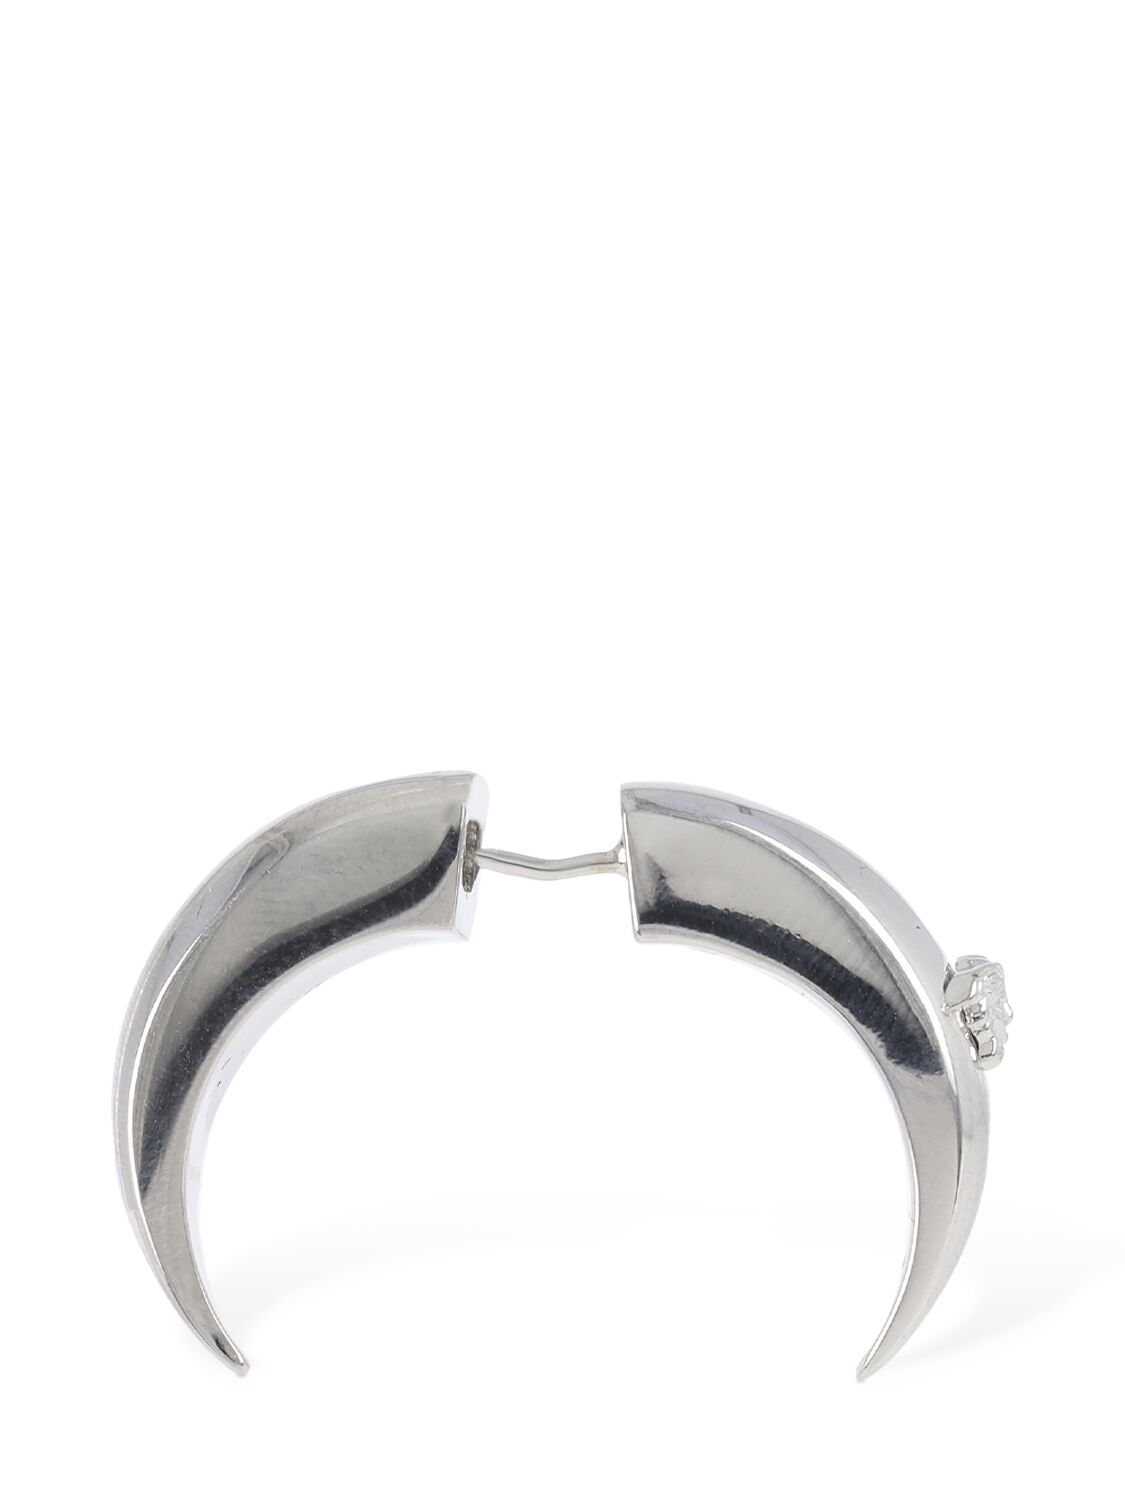 Versace Greca hoop earrings - Silver